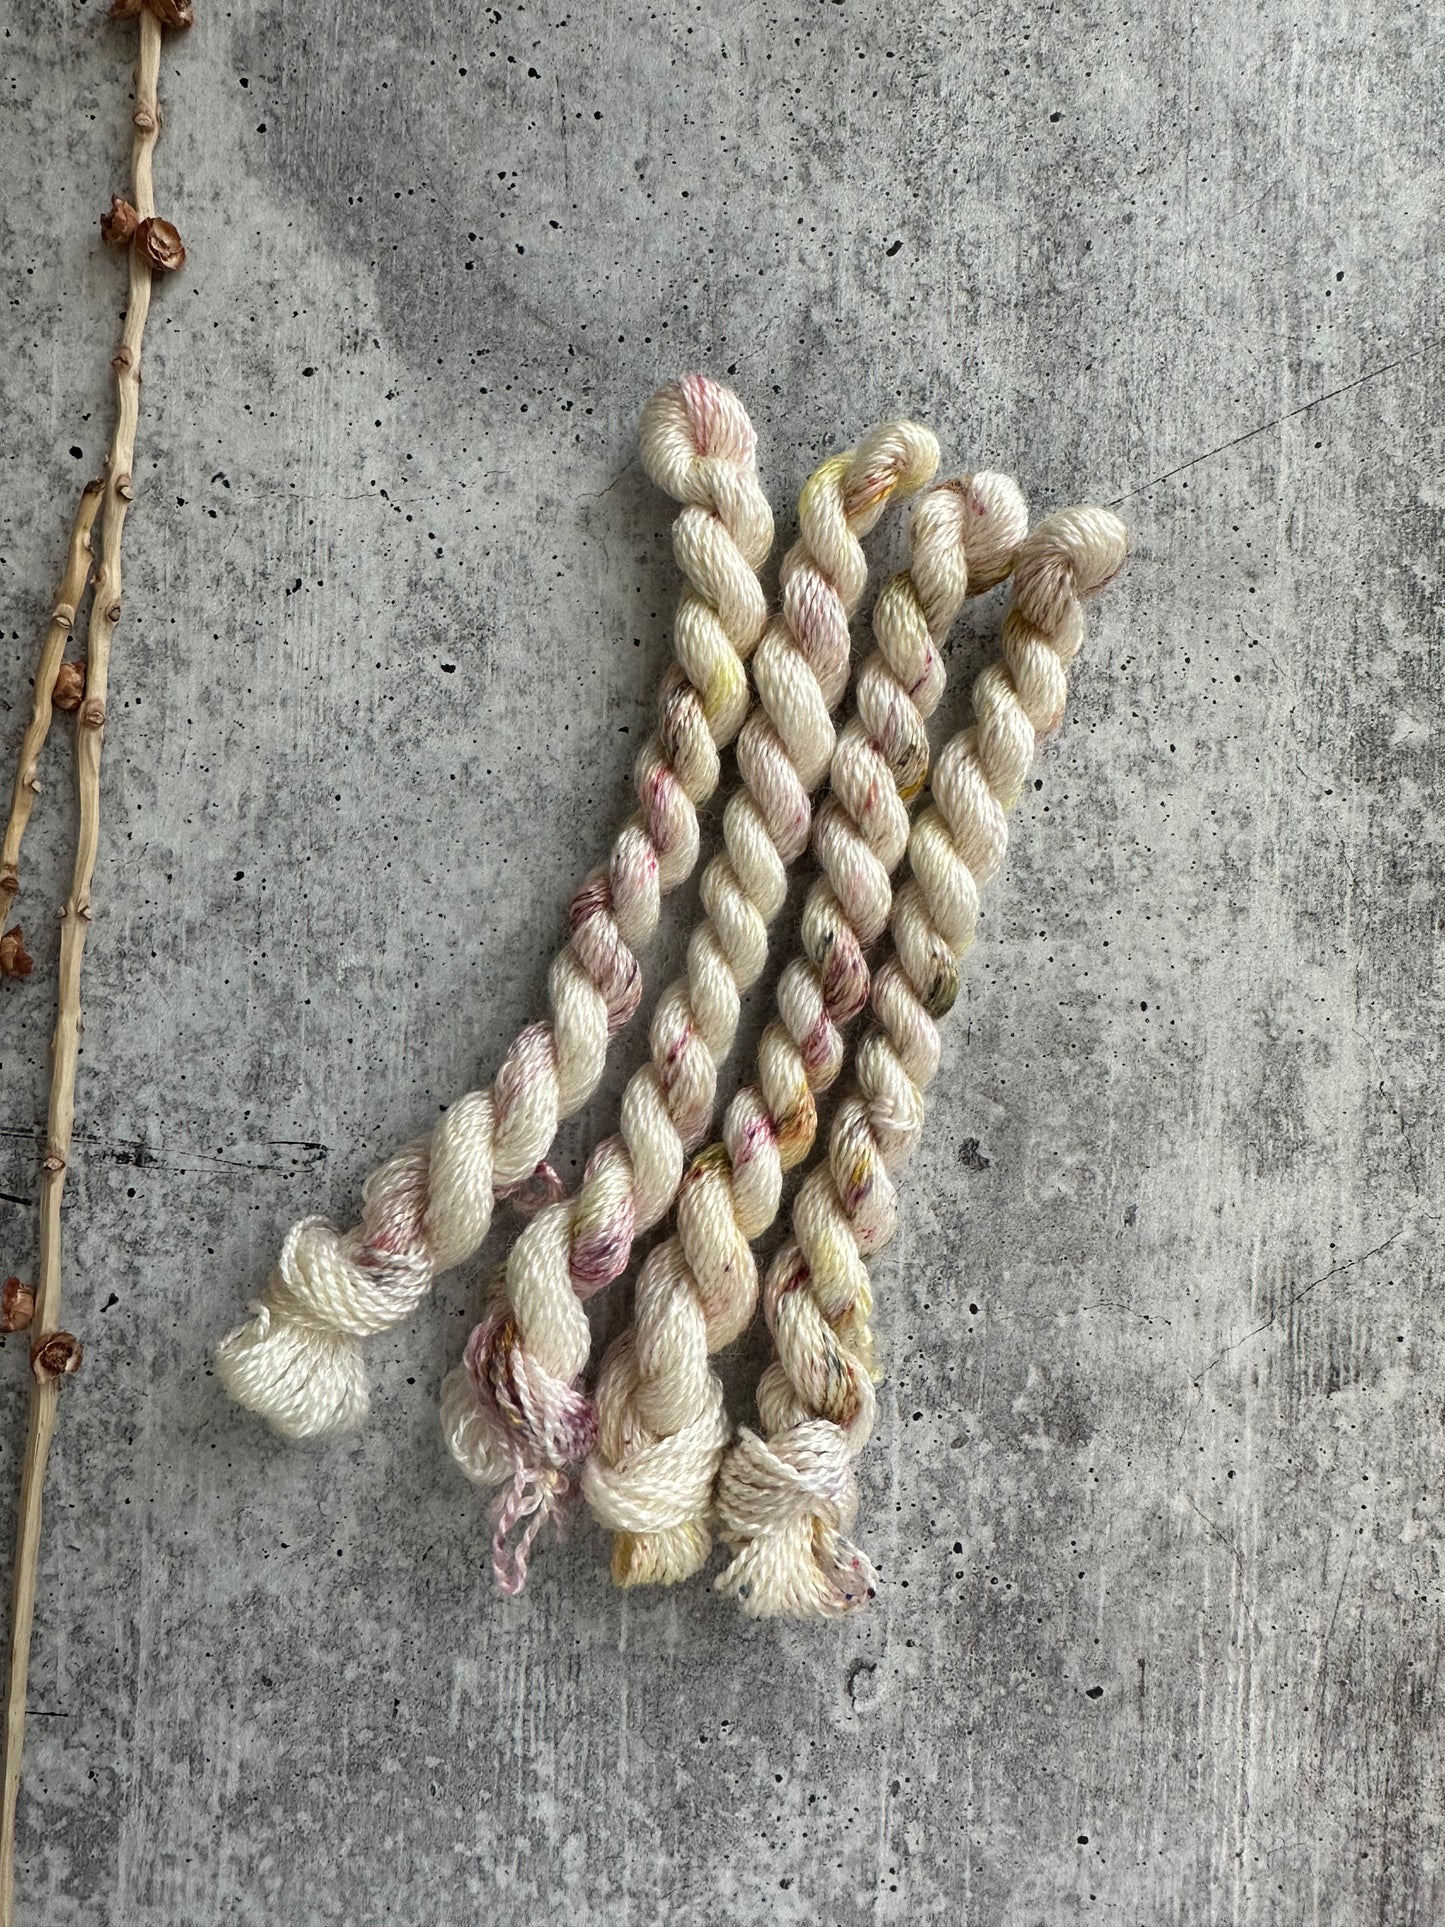 Magnolia Embroidery Thread